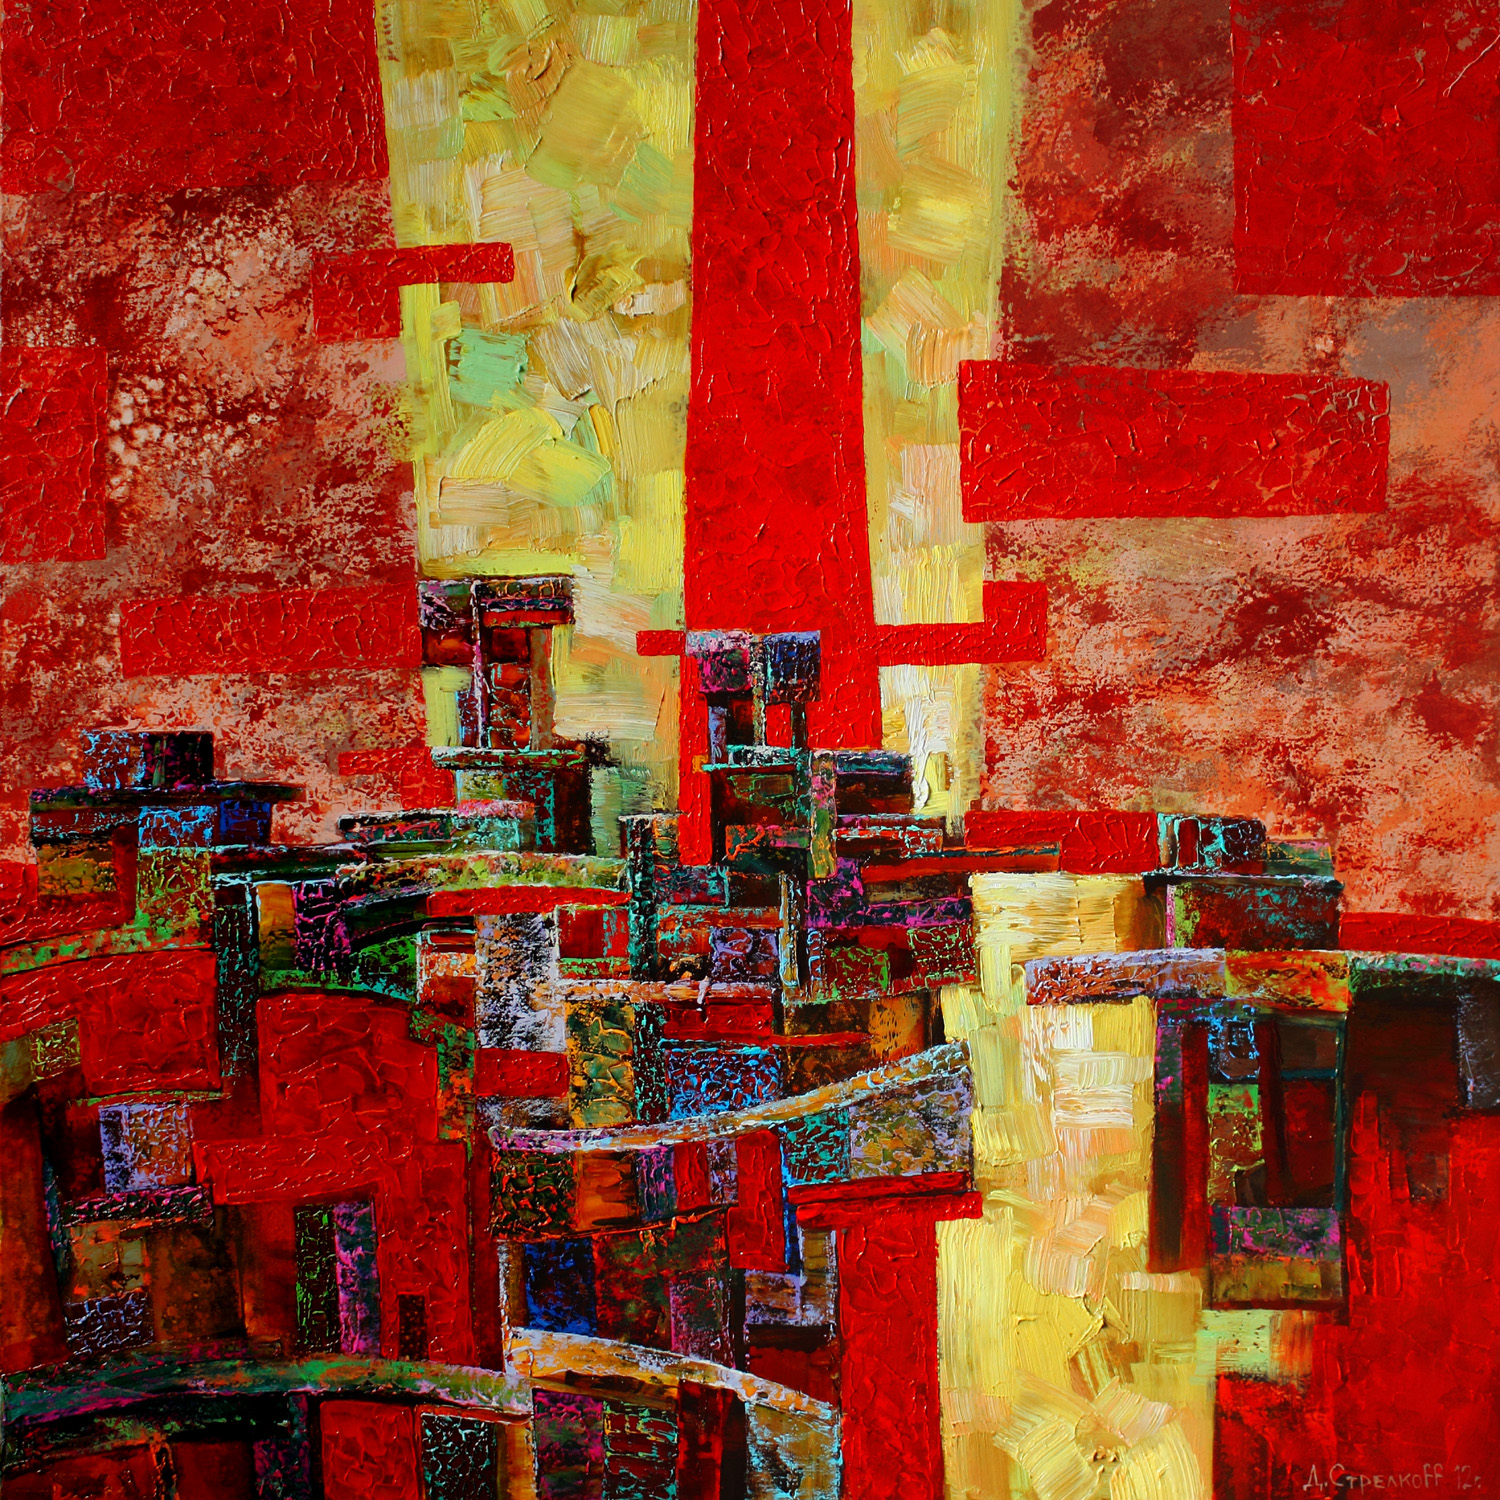 City tetris  - 1, Dmitry Strelkov, Buy the painting Oil